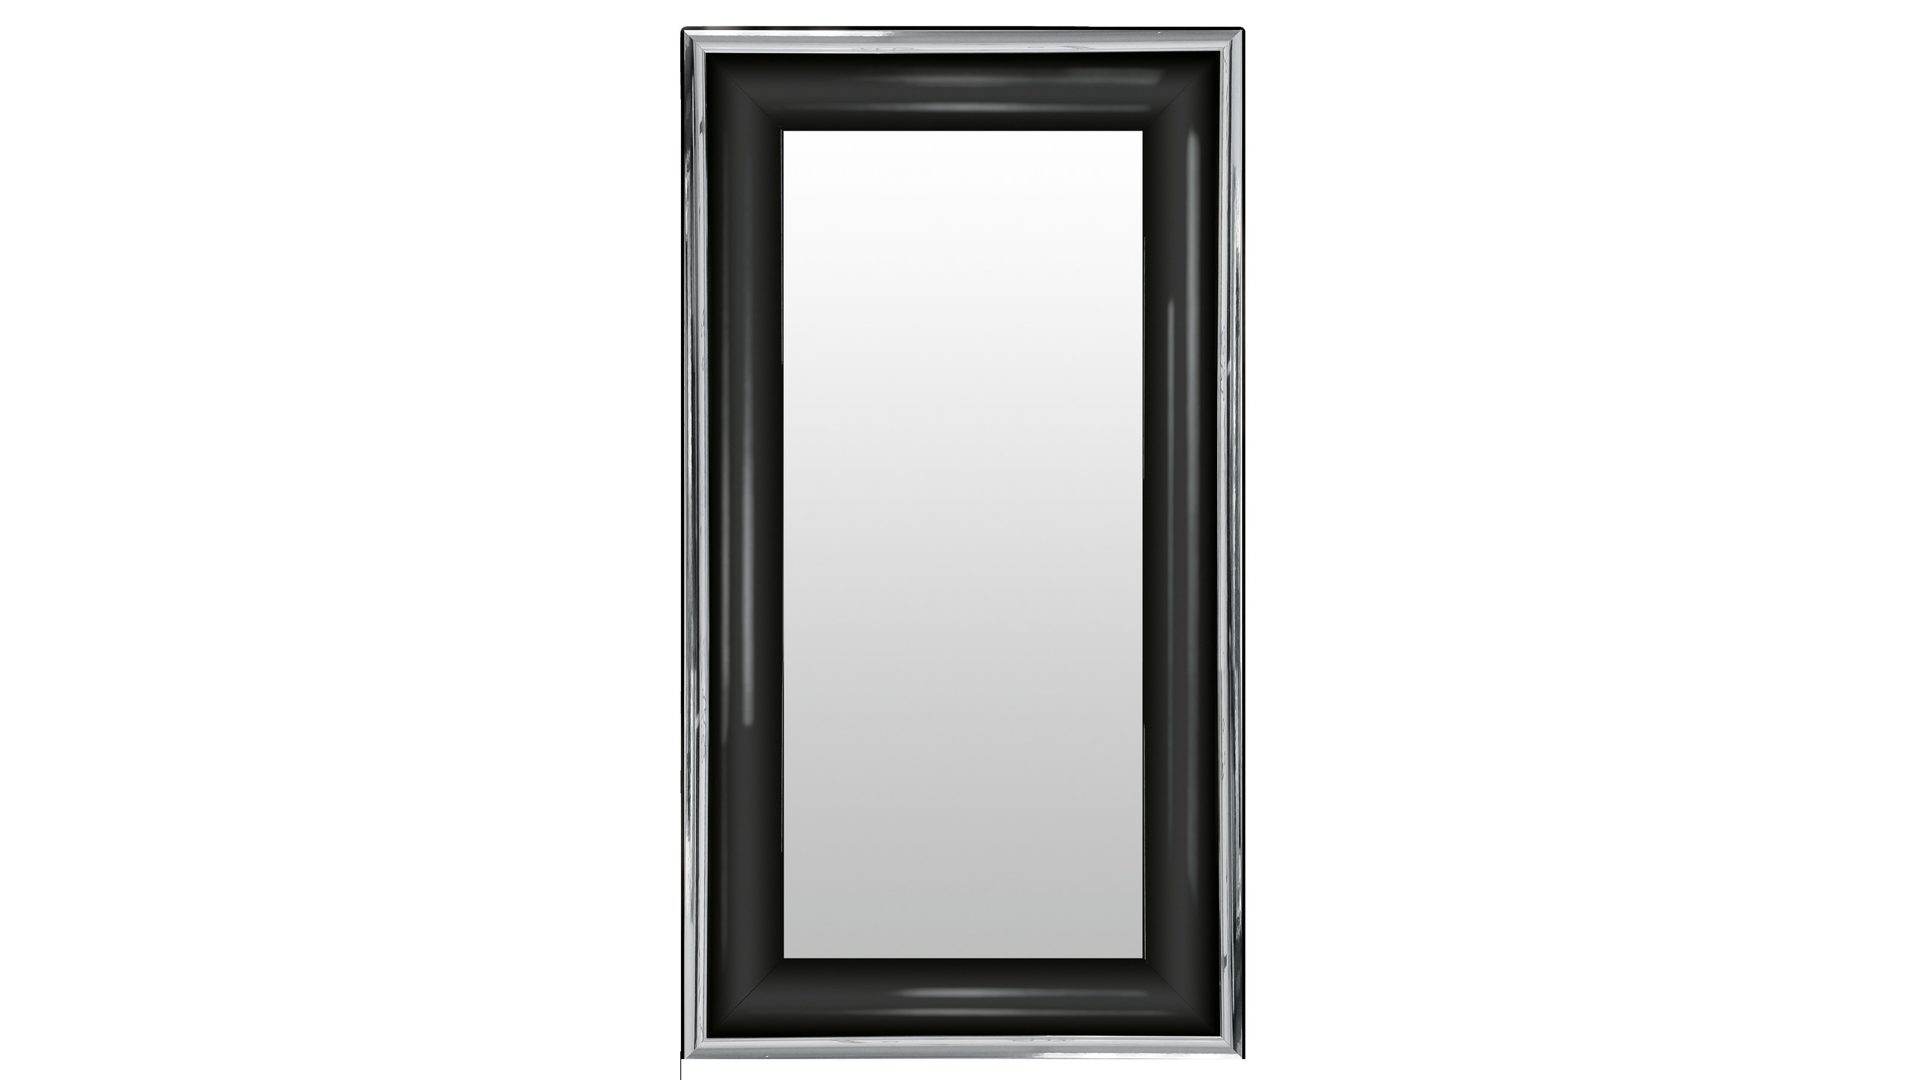 Wandspiegel Len-fra aus Kunststoff Holz MDF Spiegel in Schwarz Silber LEN-FRA Wandspiegel Garderobenspiegel TIARA Holzrahmen schwarz-silber - 50 x 100 cm